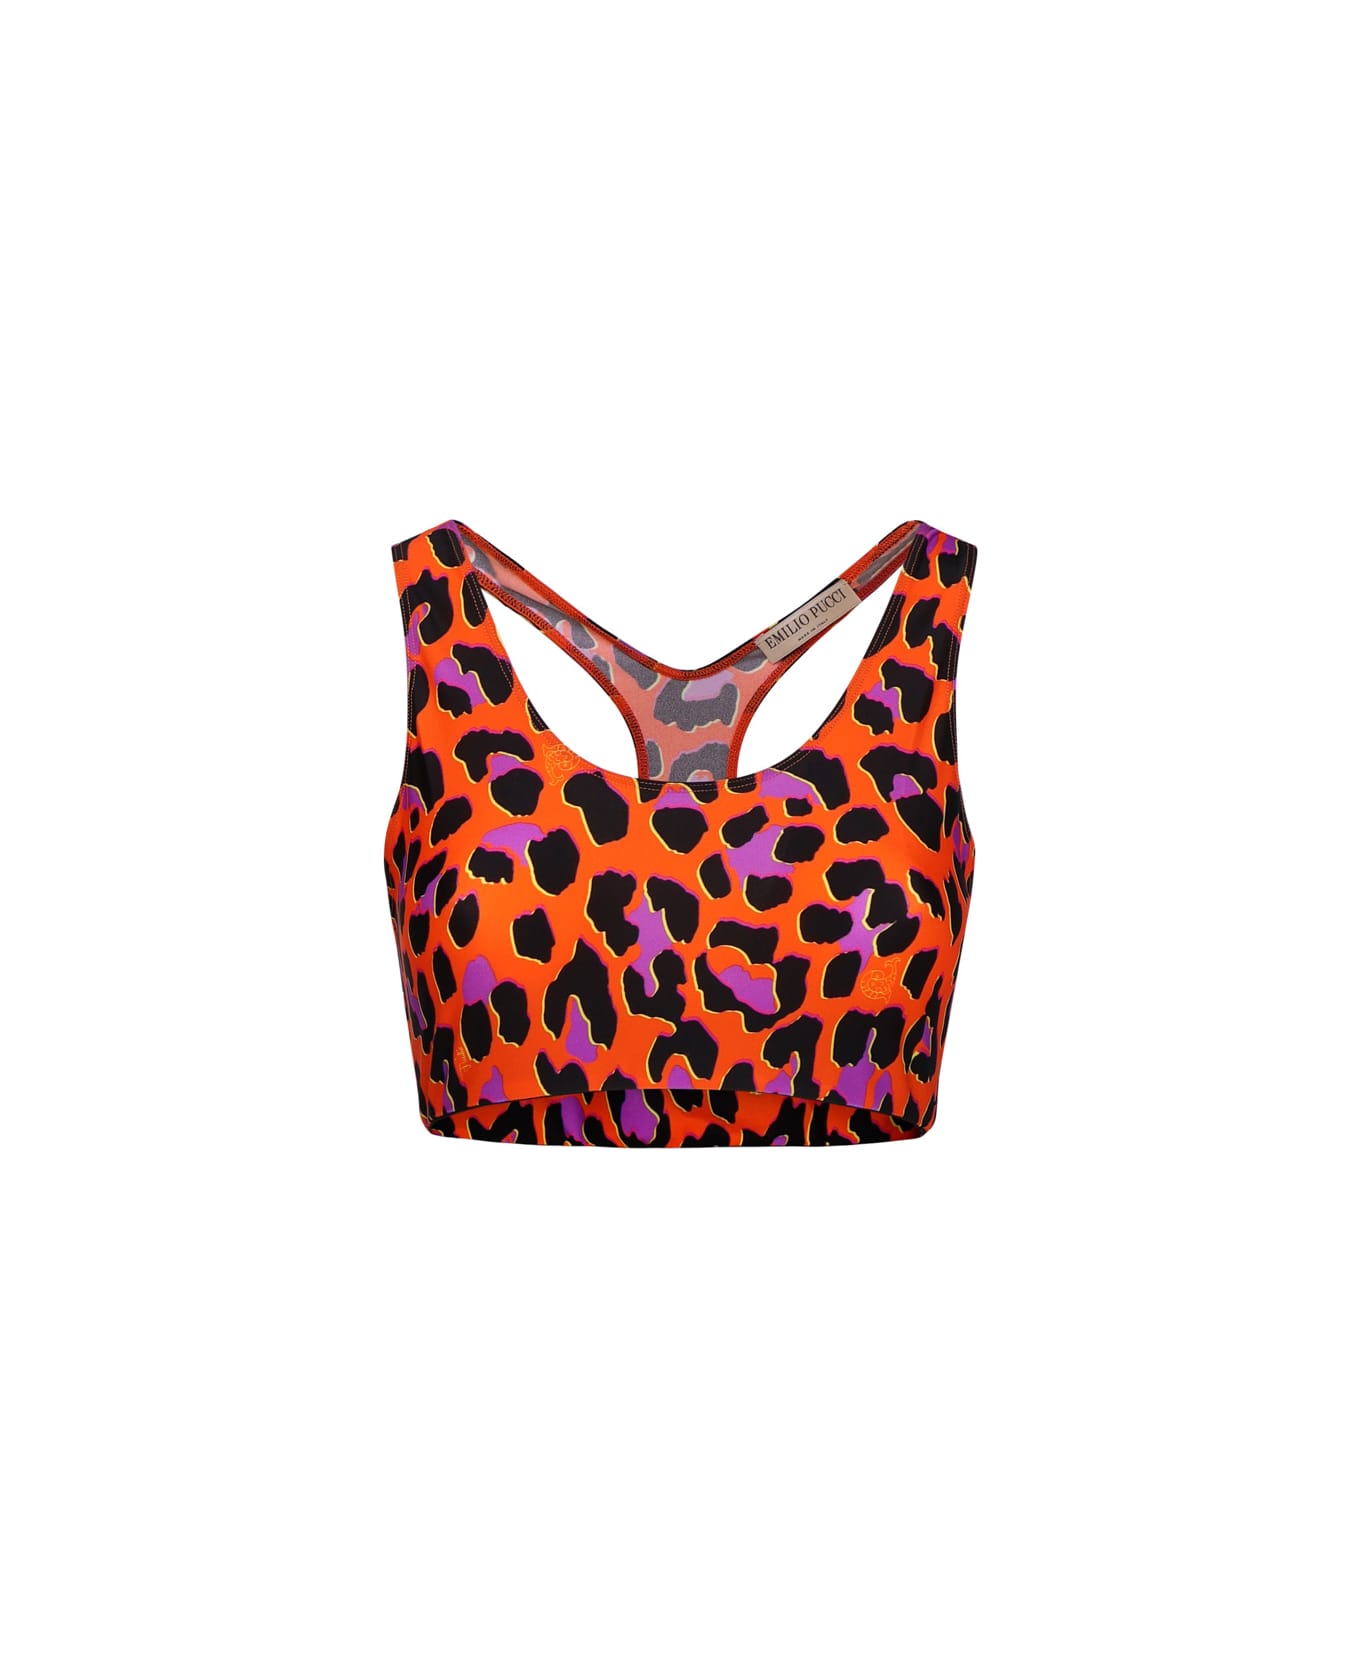 Pucci Leopard Print Crop Top - Arancio